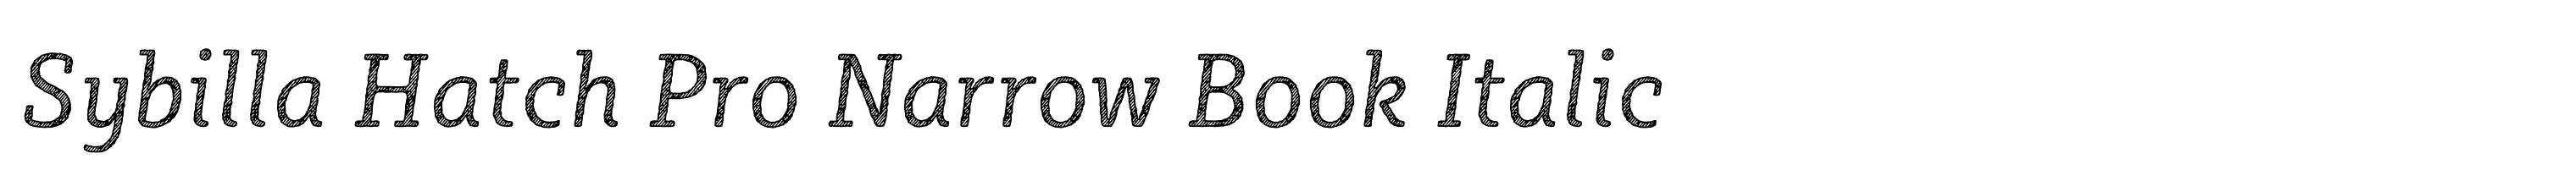 Sybilla Hatch Pro Narrow Book Italic